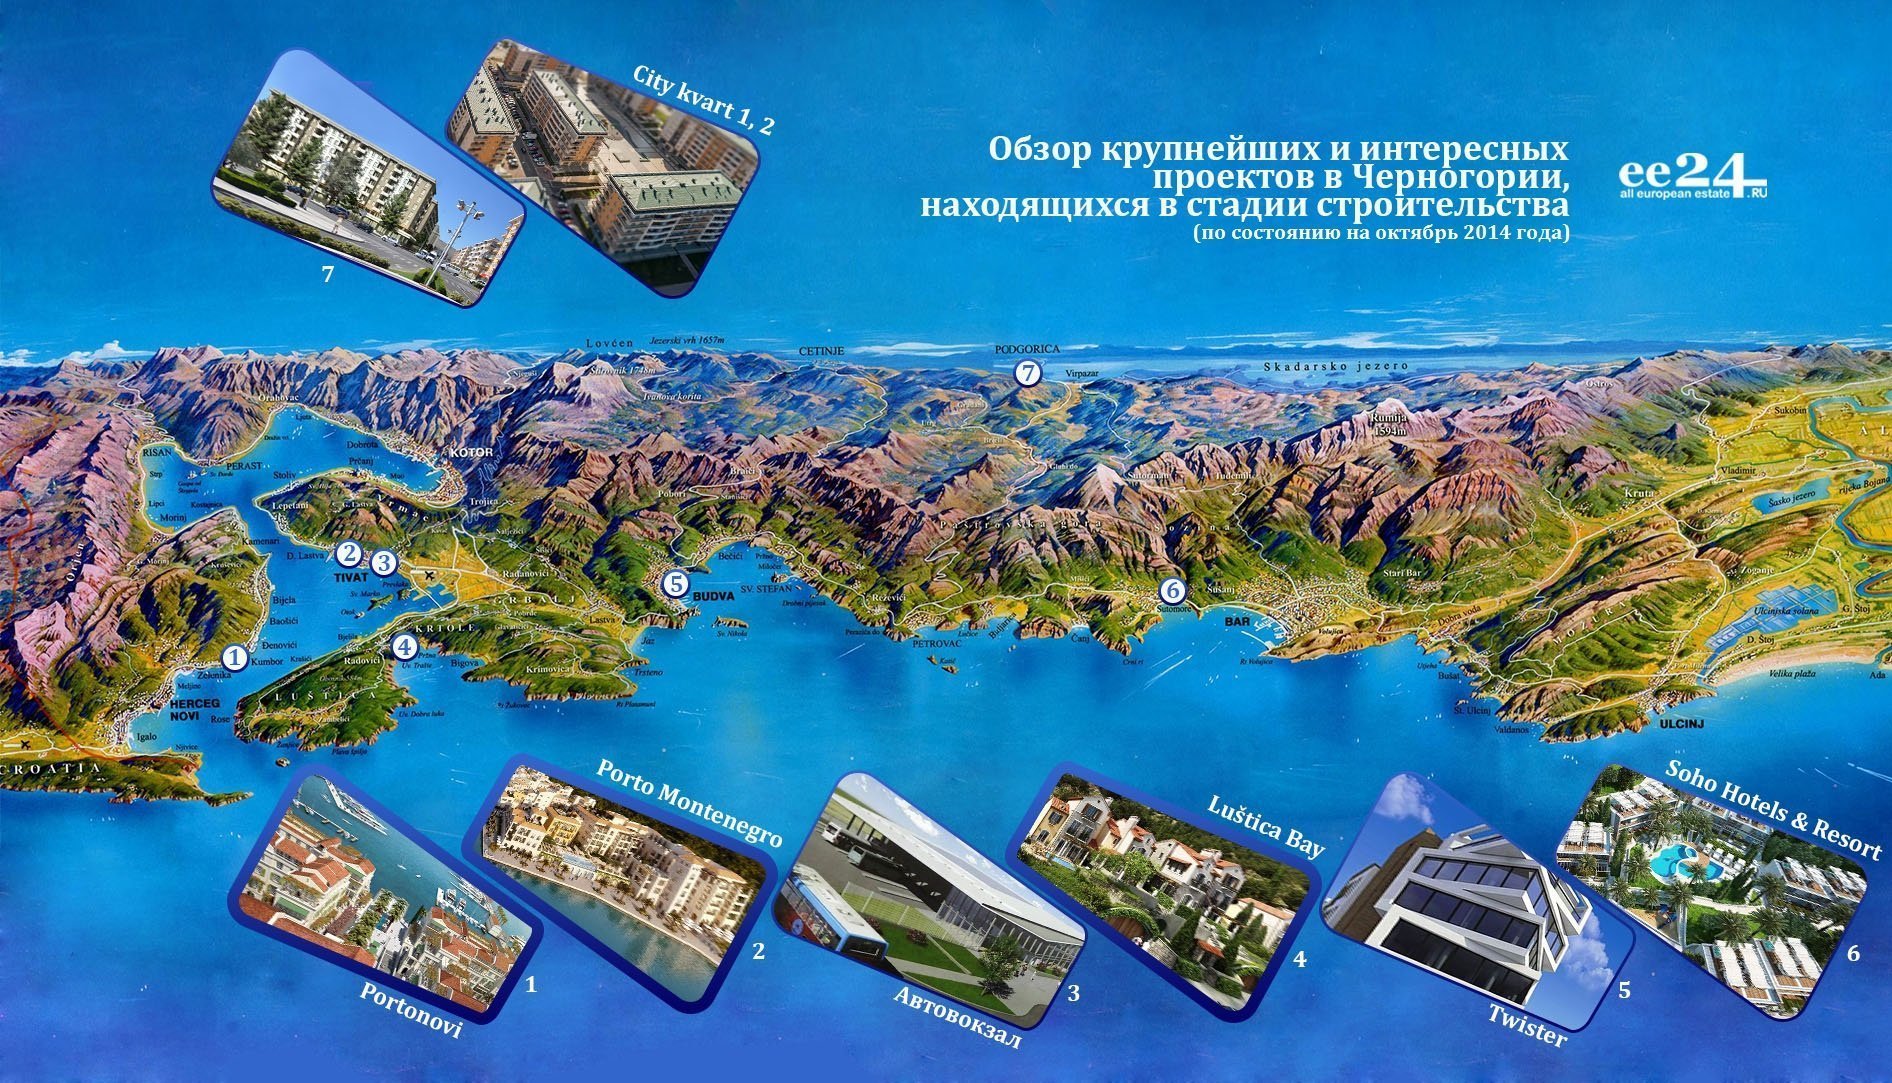 Черногория меняется. Девелоперы рассказали о масштабных проектах | Фотография 1 | ee24